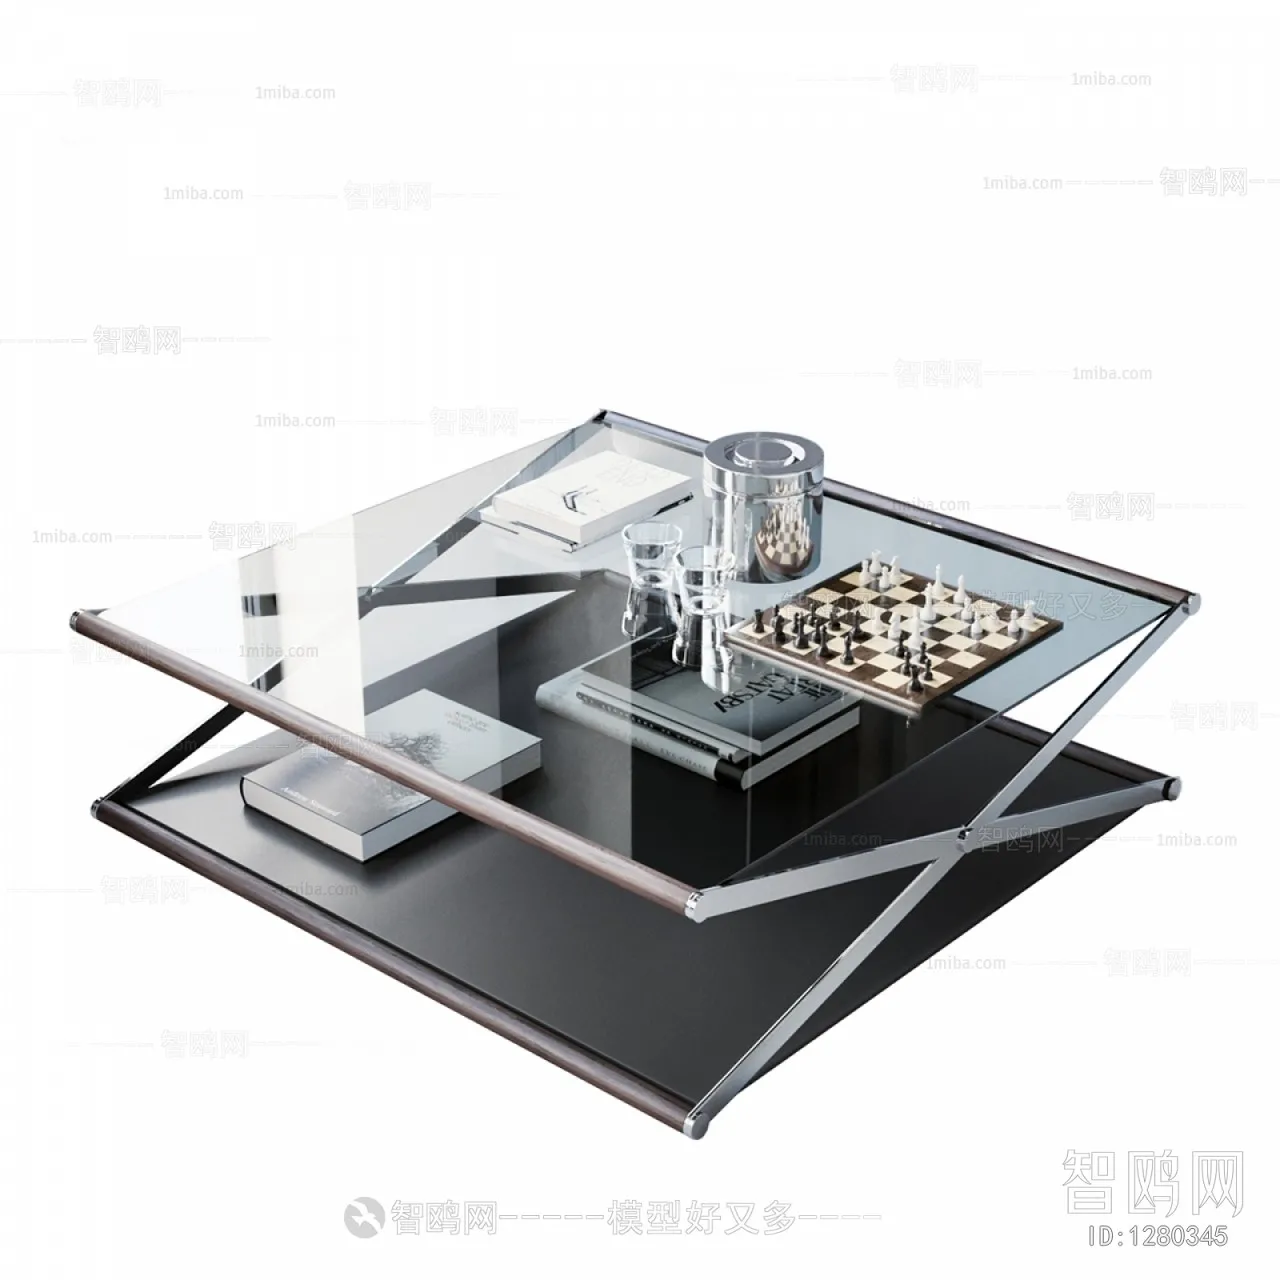 TEA TABLES 3D MODELS – 035 – PRO